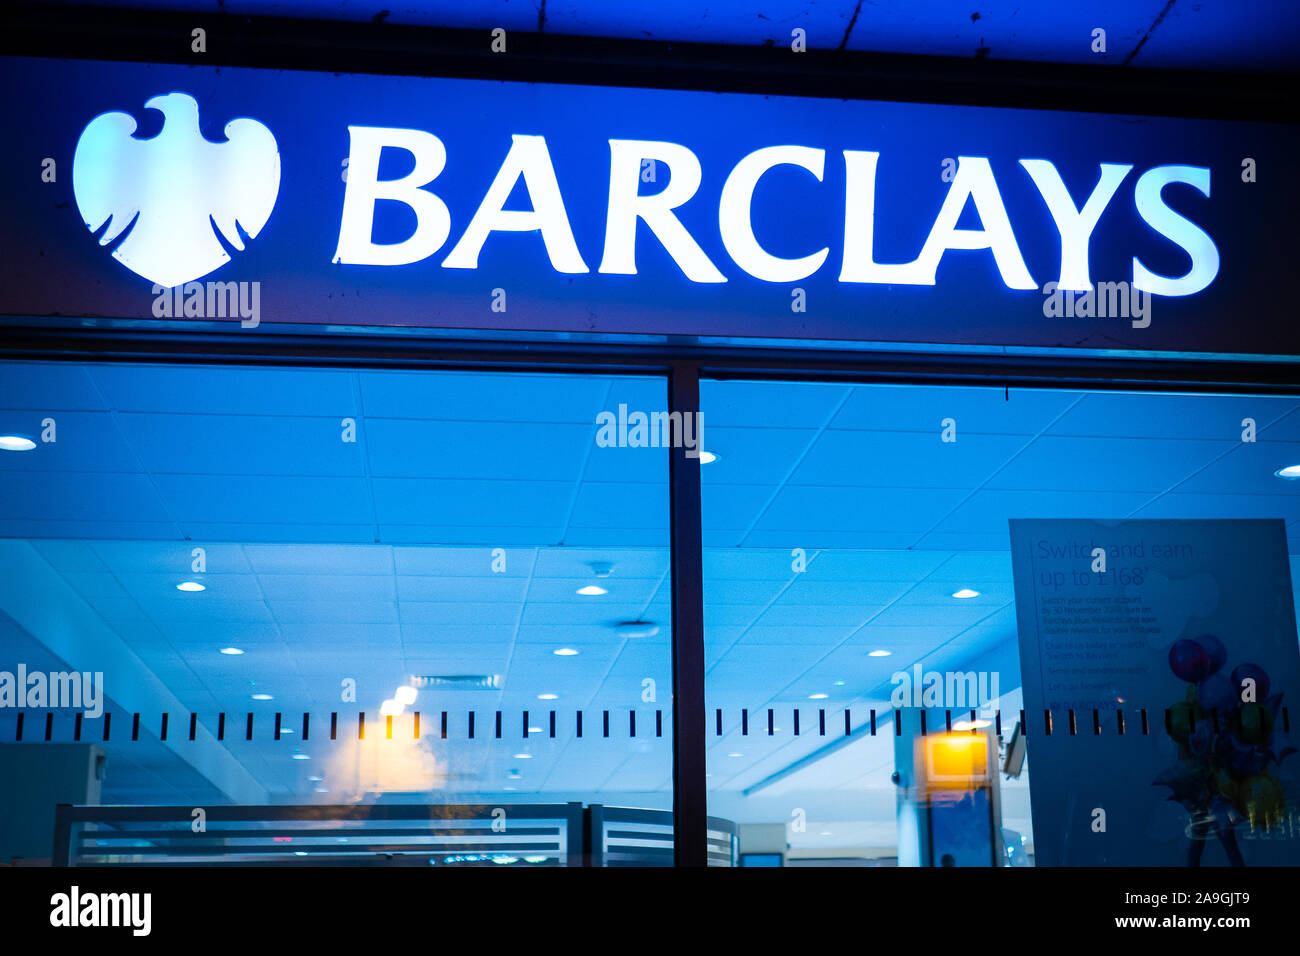 Barclays High Street Bank Cash Stockfotos Und Bilder Kaufen Alamy